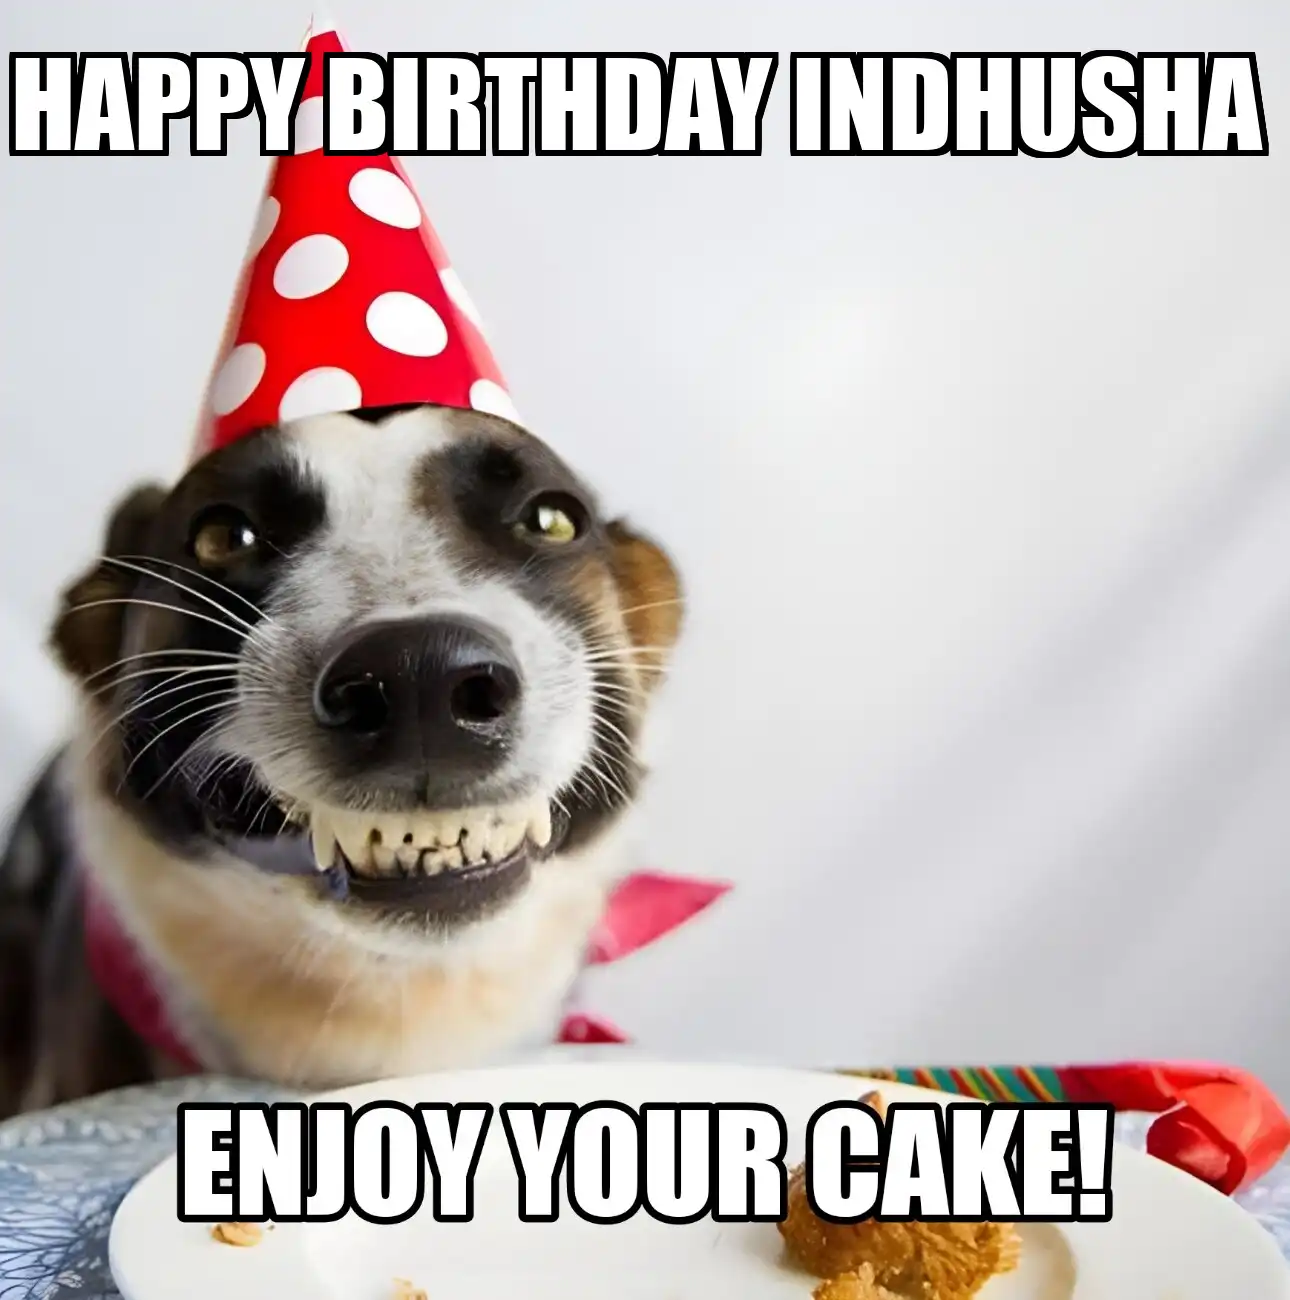 Happy Birthday Indhusha Enjoy Your Cake Dog Meme